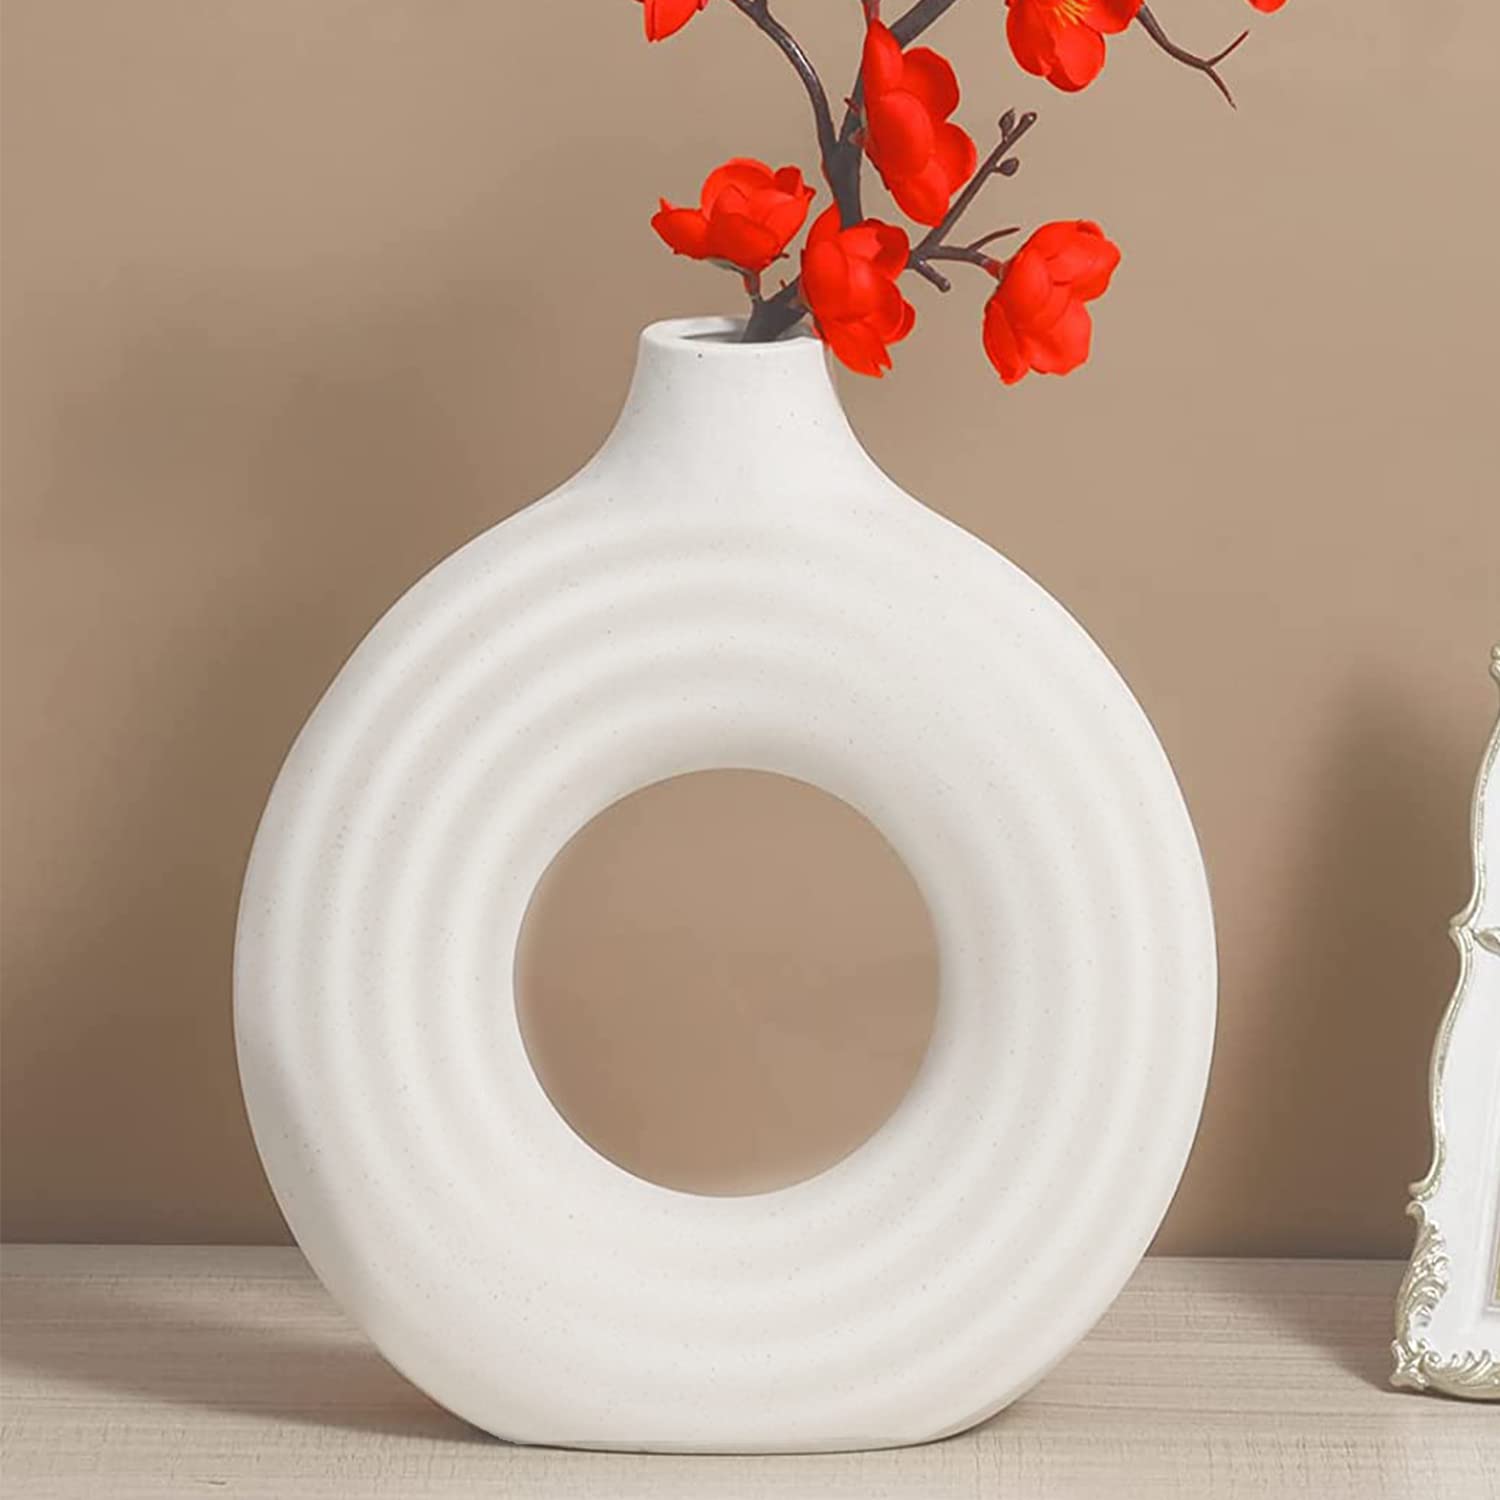 Haute Qualité Arawat Céramique Vases Blancs Vases Déco Porcelaine Vase Fleurs Vase de Table pour Herbe de Pampa Fleurs séchées Vase Moderne pour décoration de Table Mariage Cadeau Vase Tulipe 19x16x5.5cm MqzTX5fXq en solde